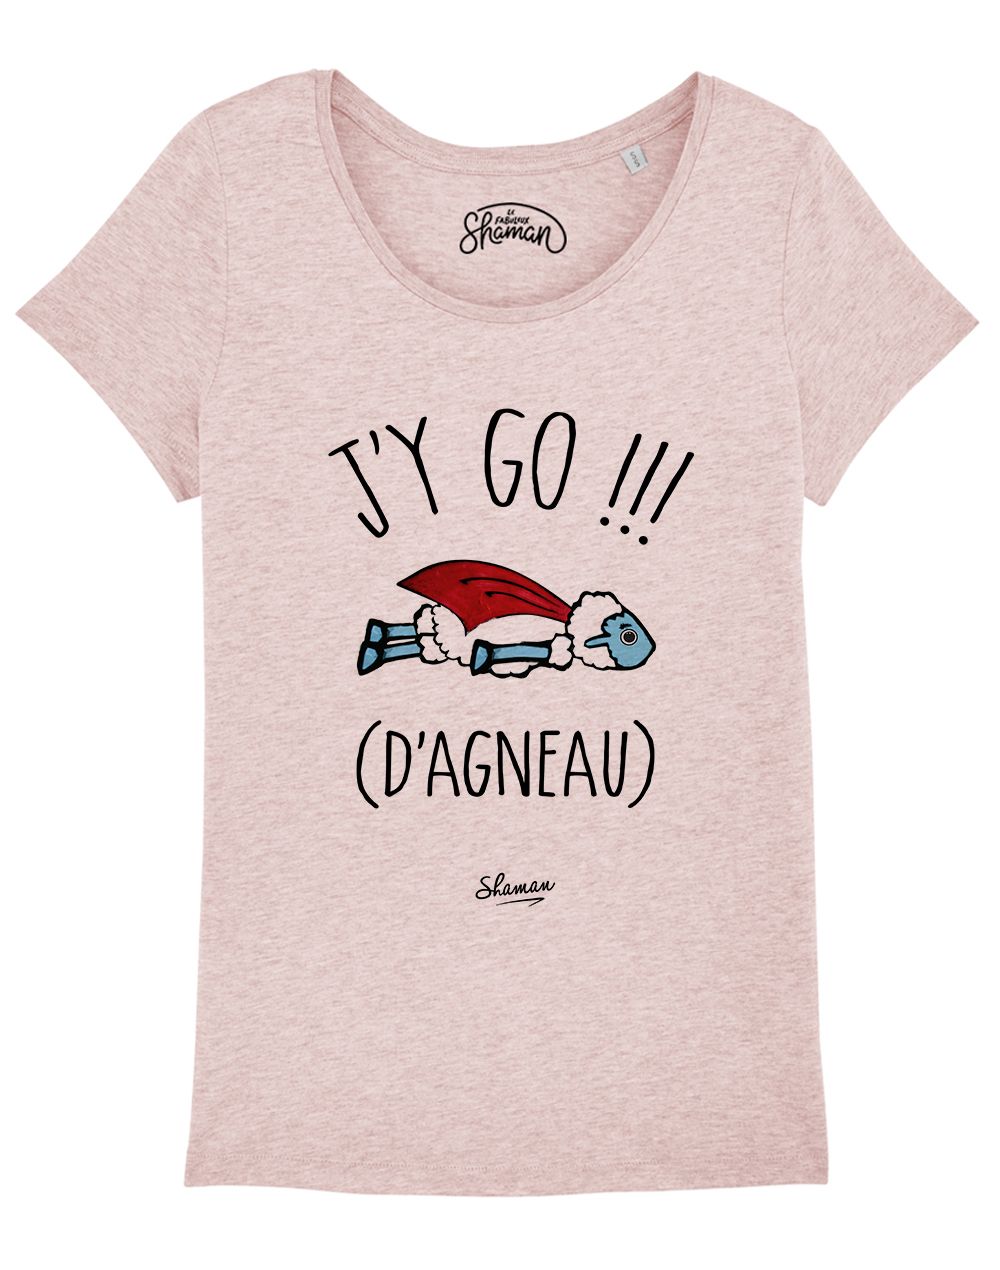 T-shirt "J'y go d'agneau"